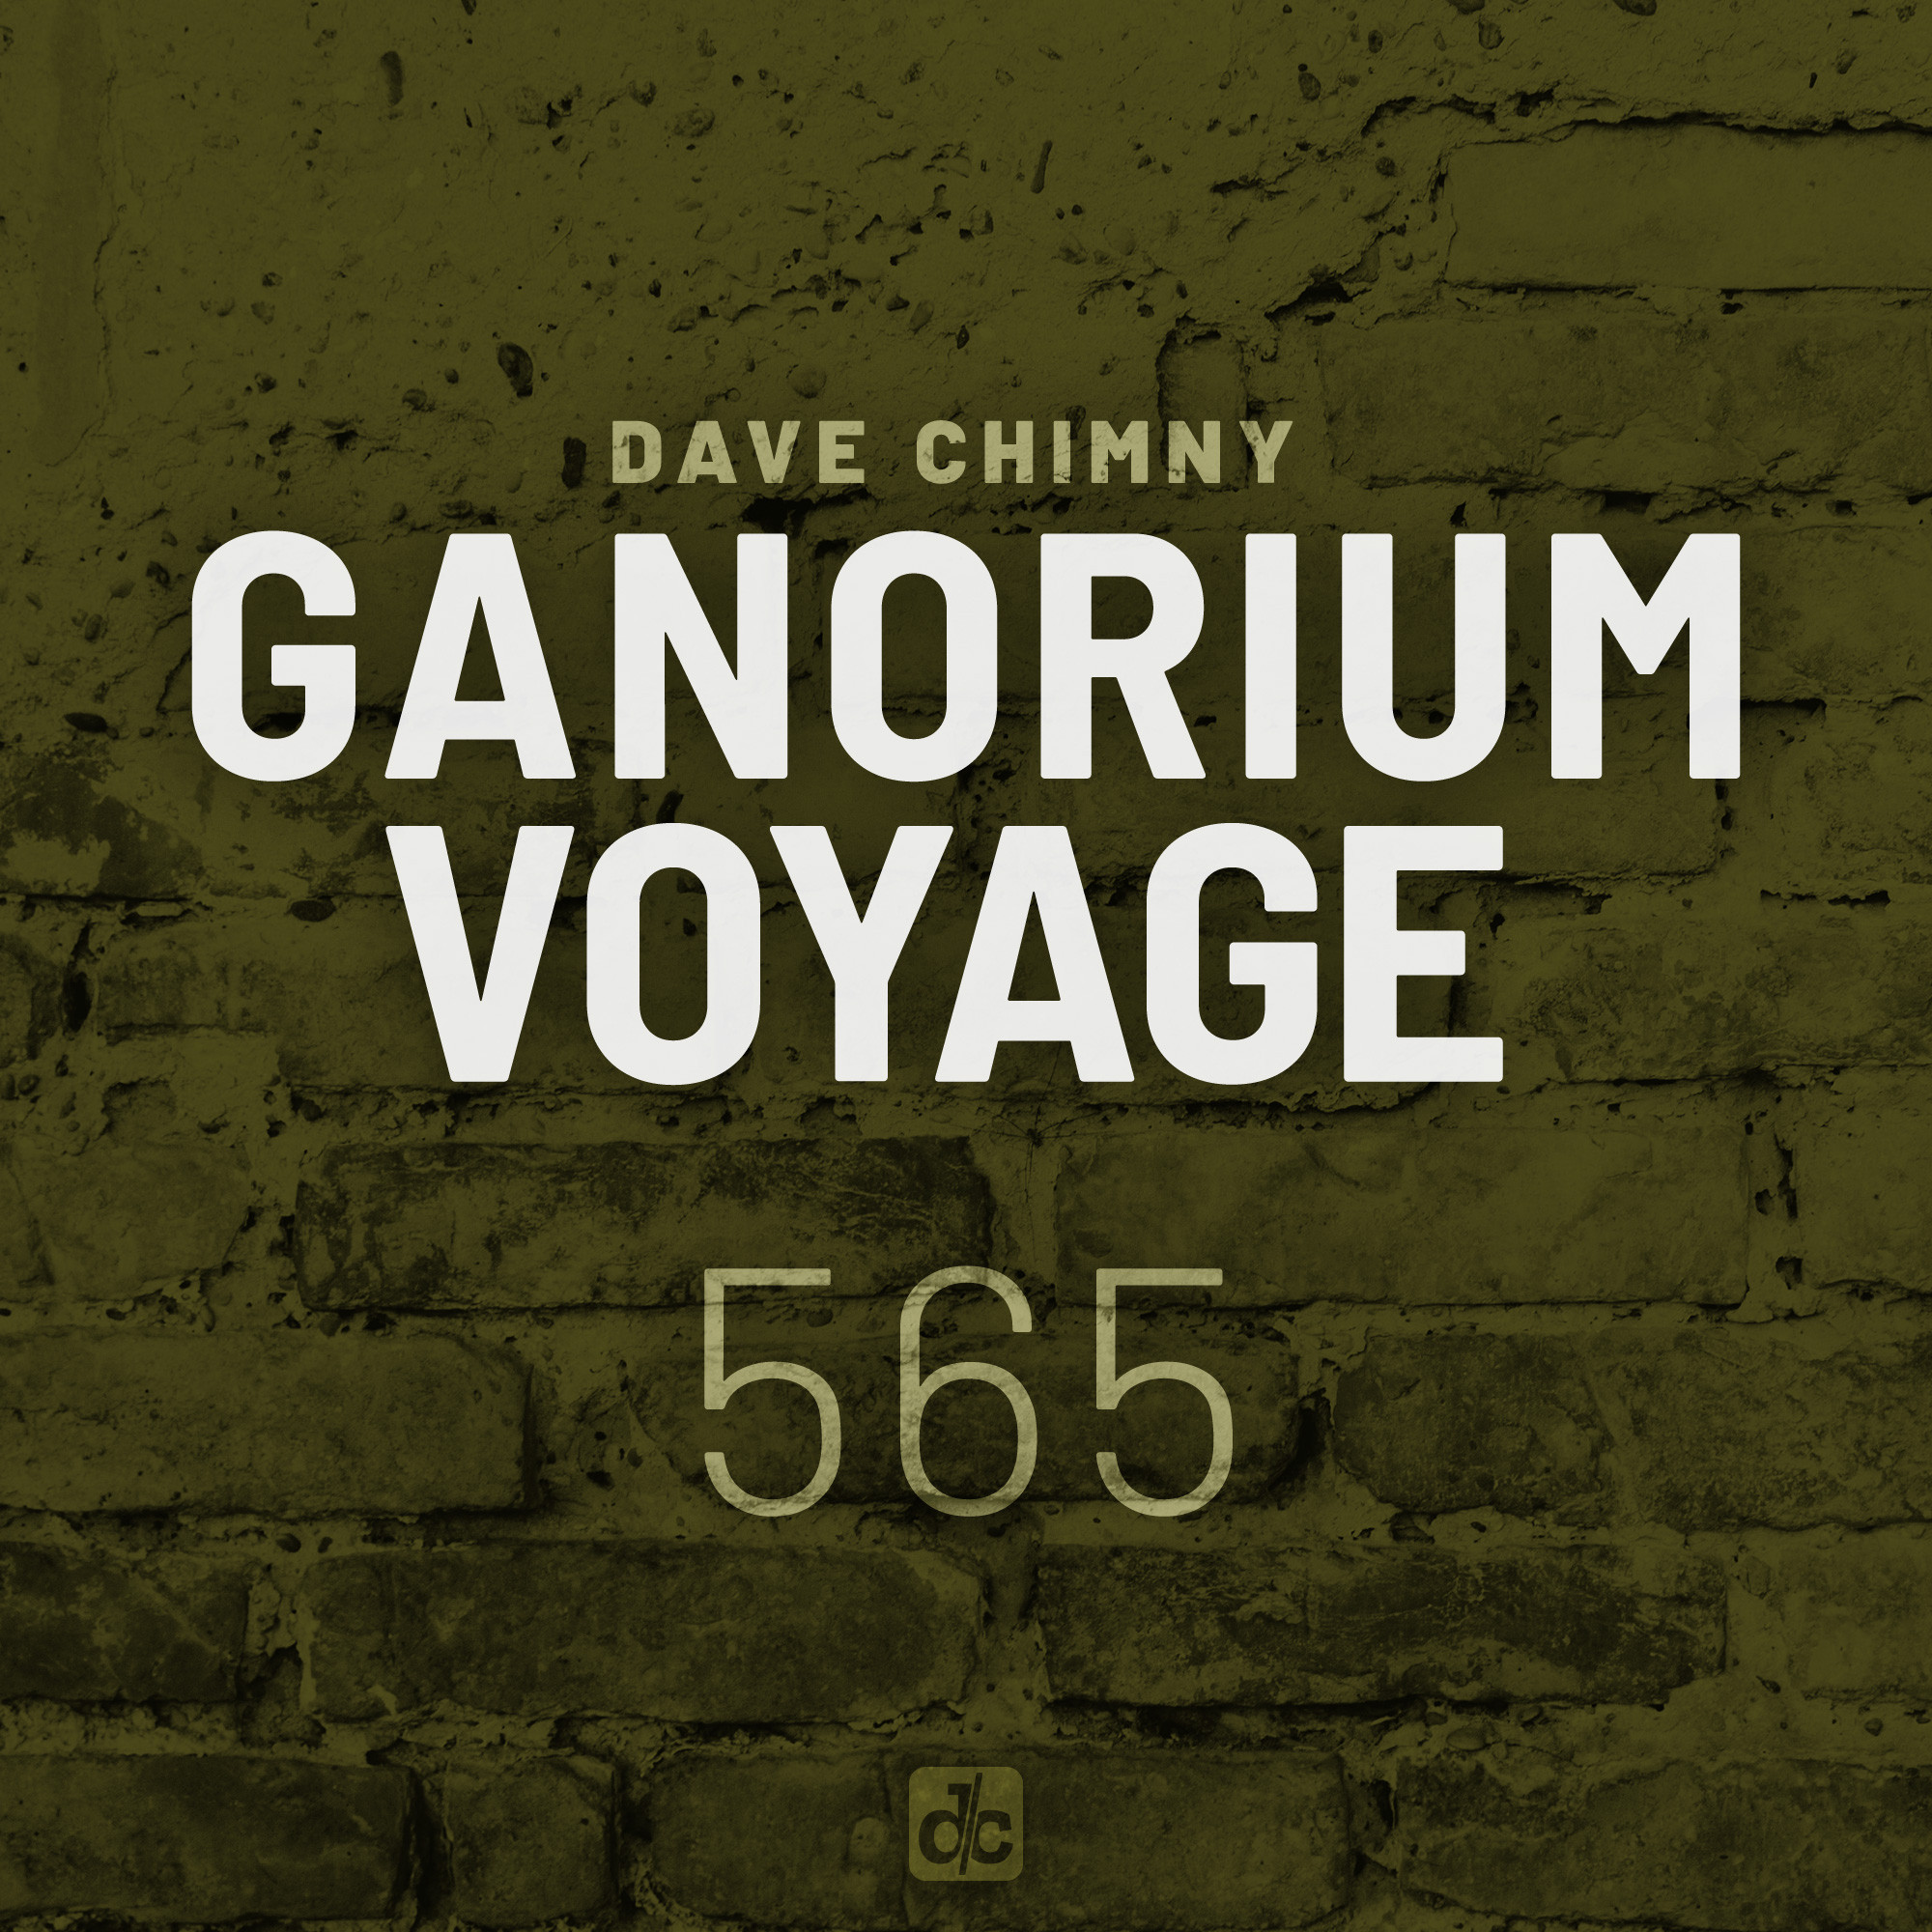 Ganorium Voyage 565